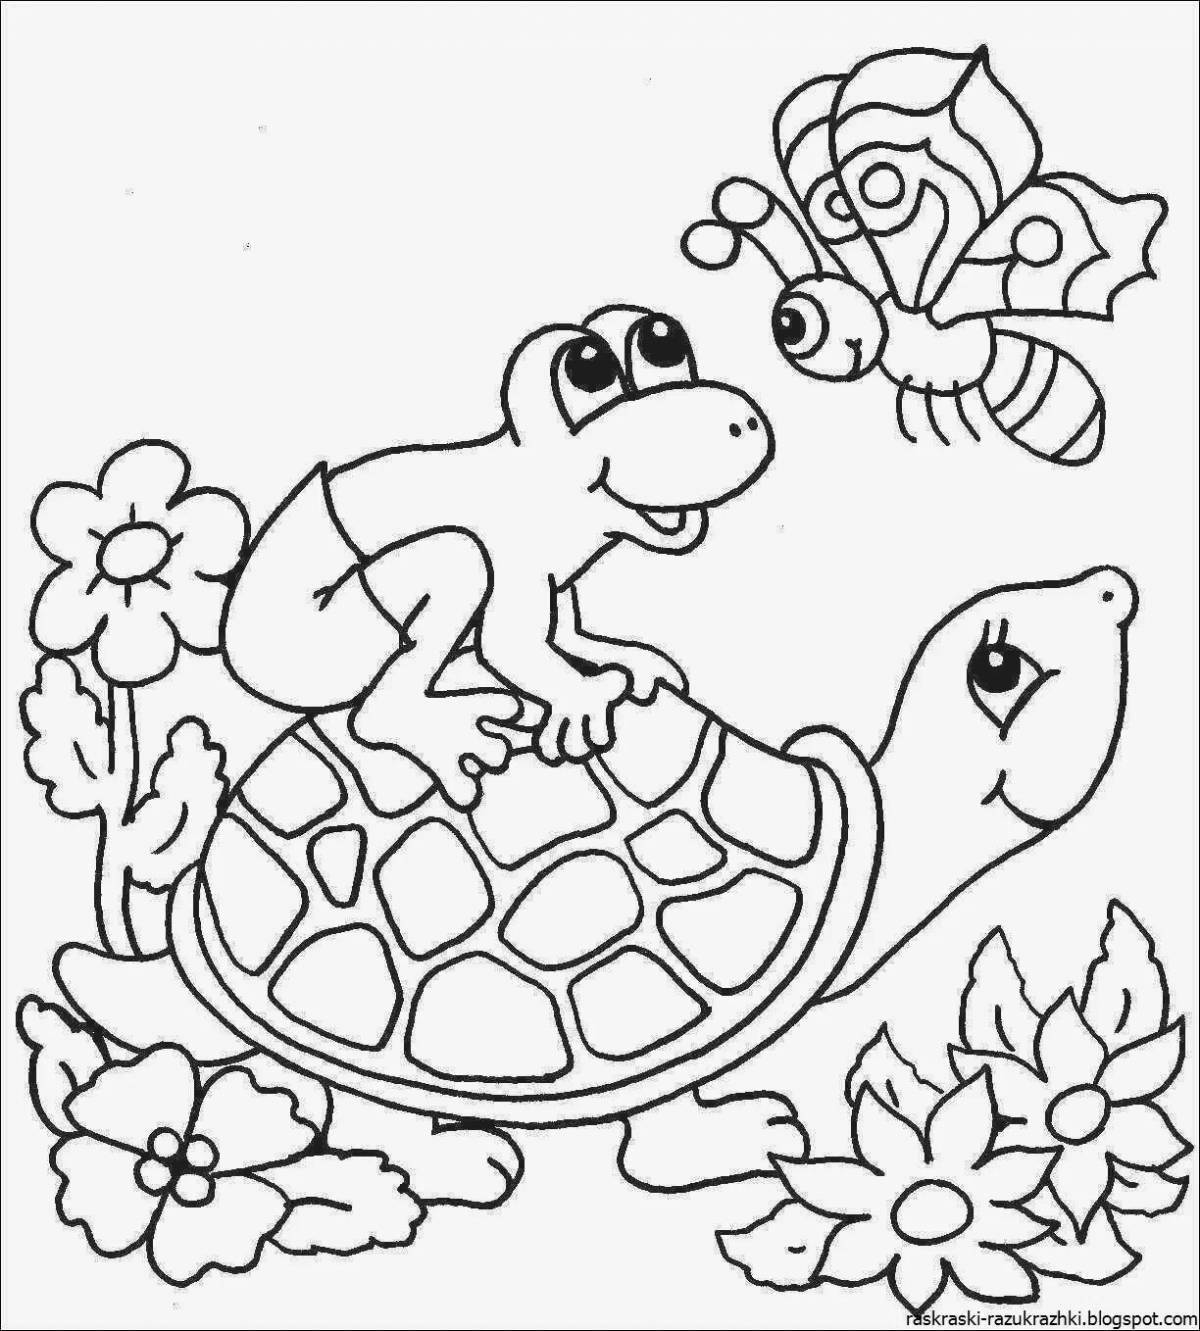 Волнистые раскраски детские черепахи